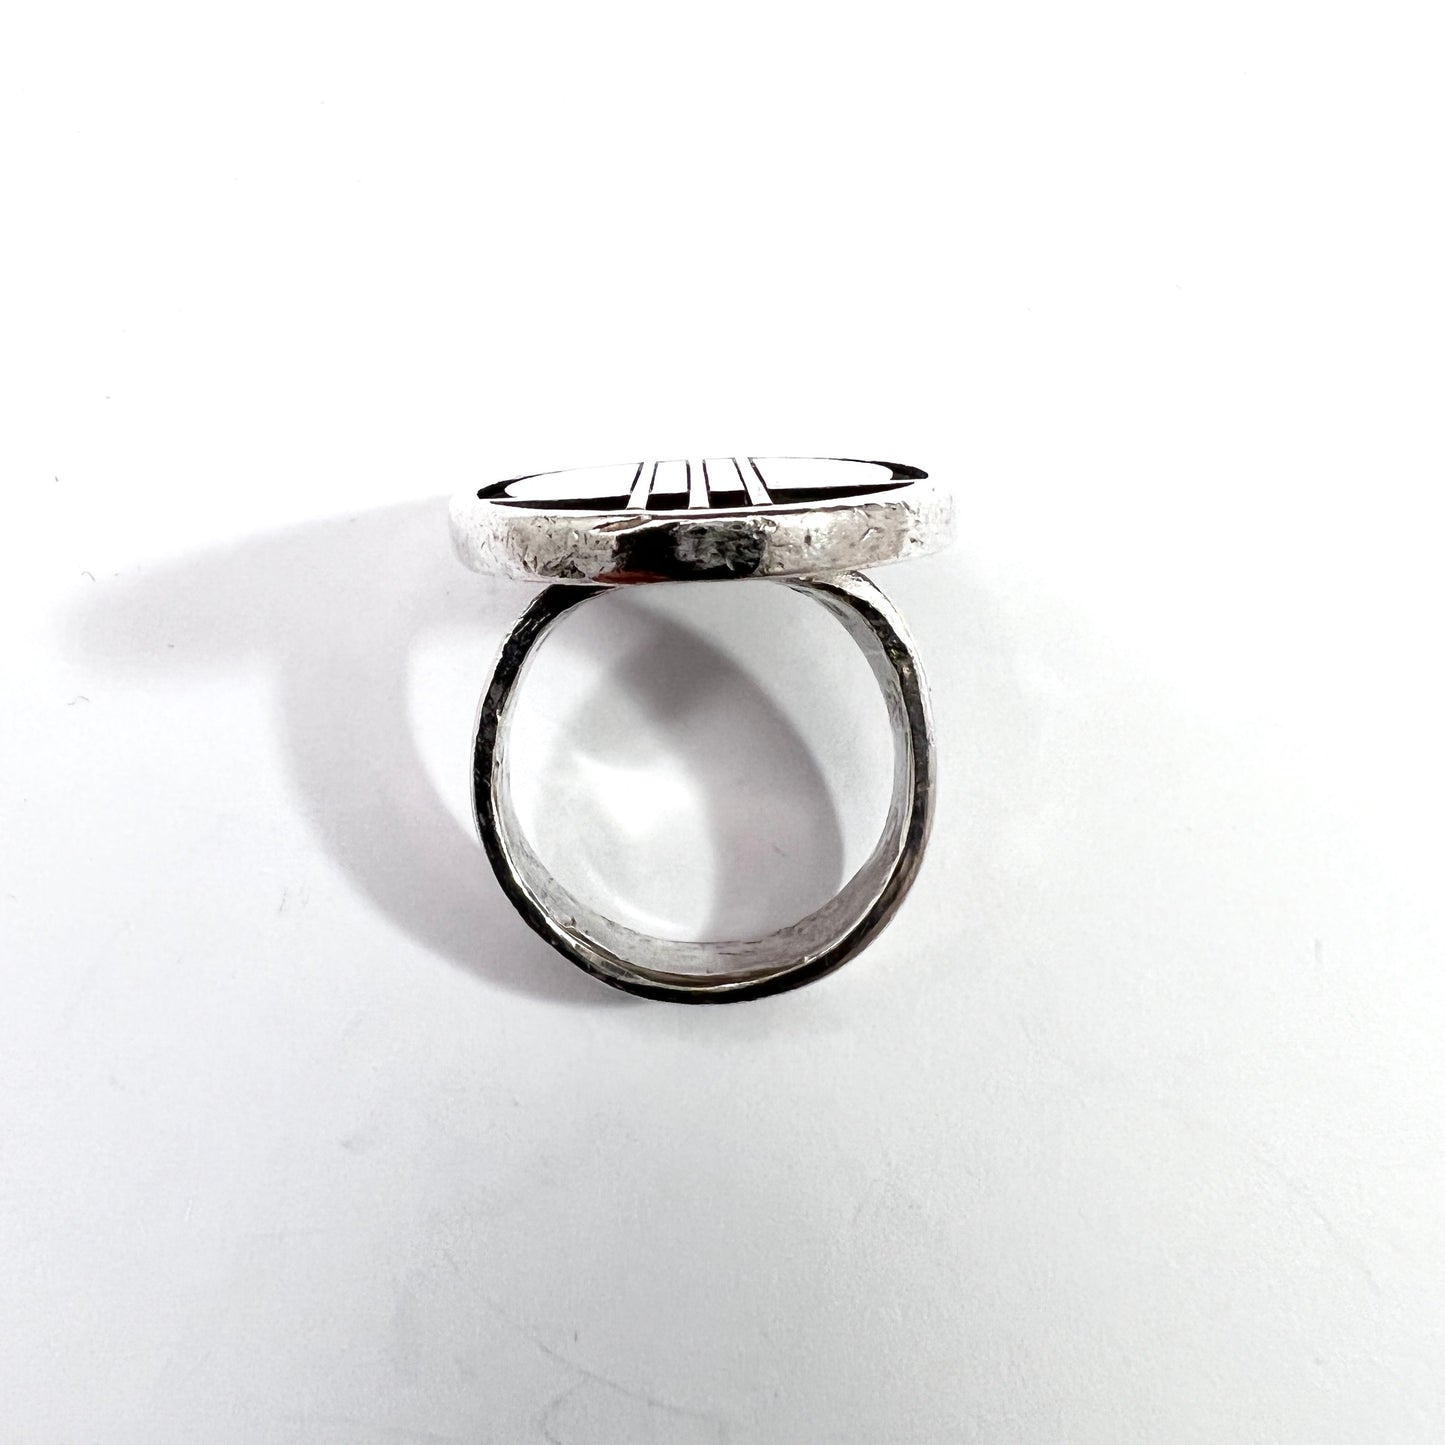 Carl L Cohr, Denmark c 1960s. Vintage Mondernist Sterling Silver Ring.